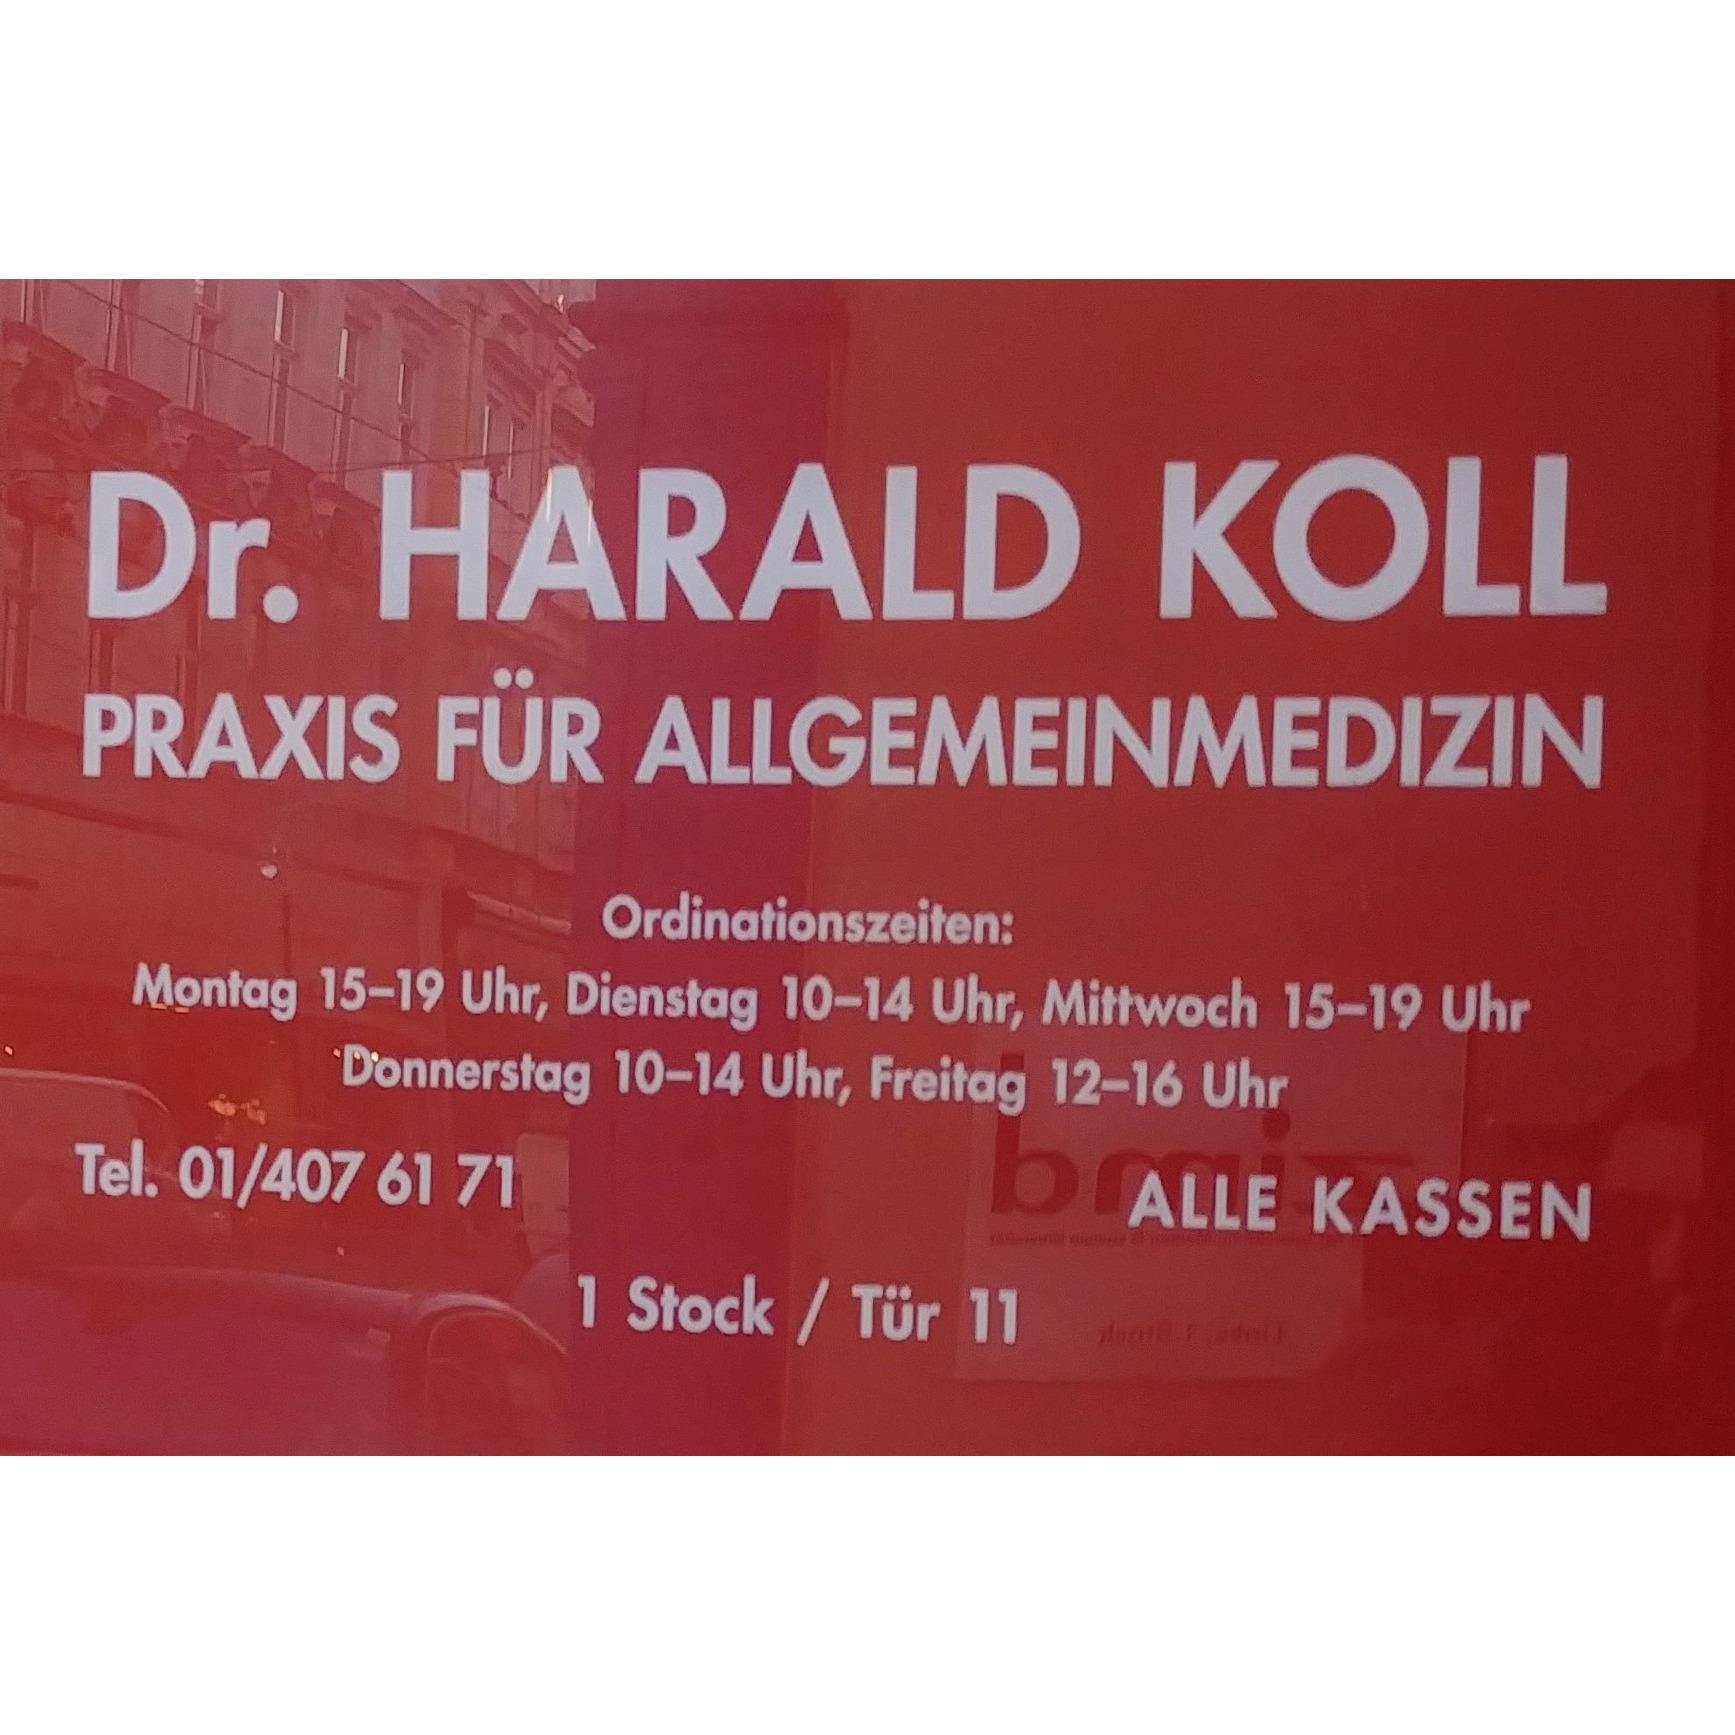 Dr. Harald Koll Wien 01 4076171